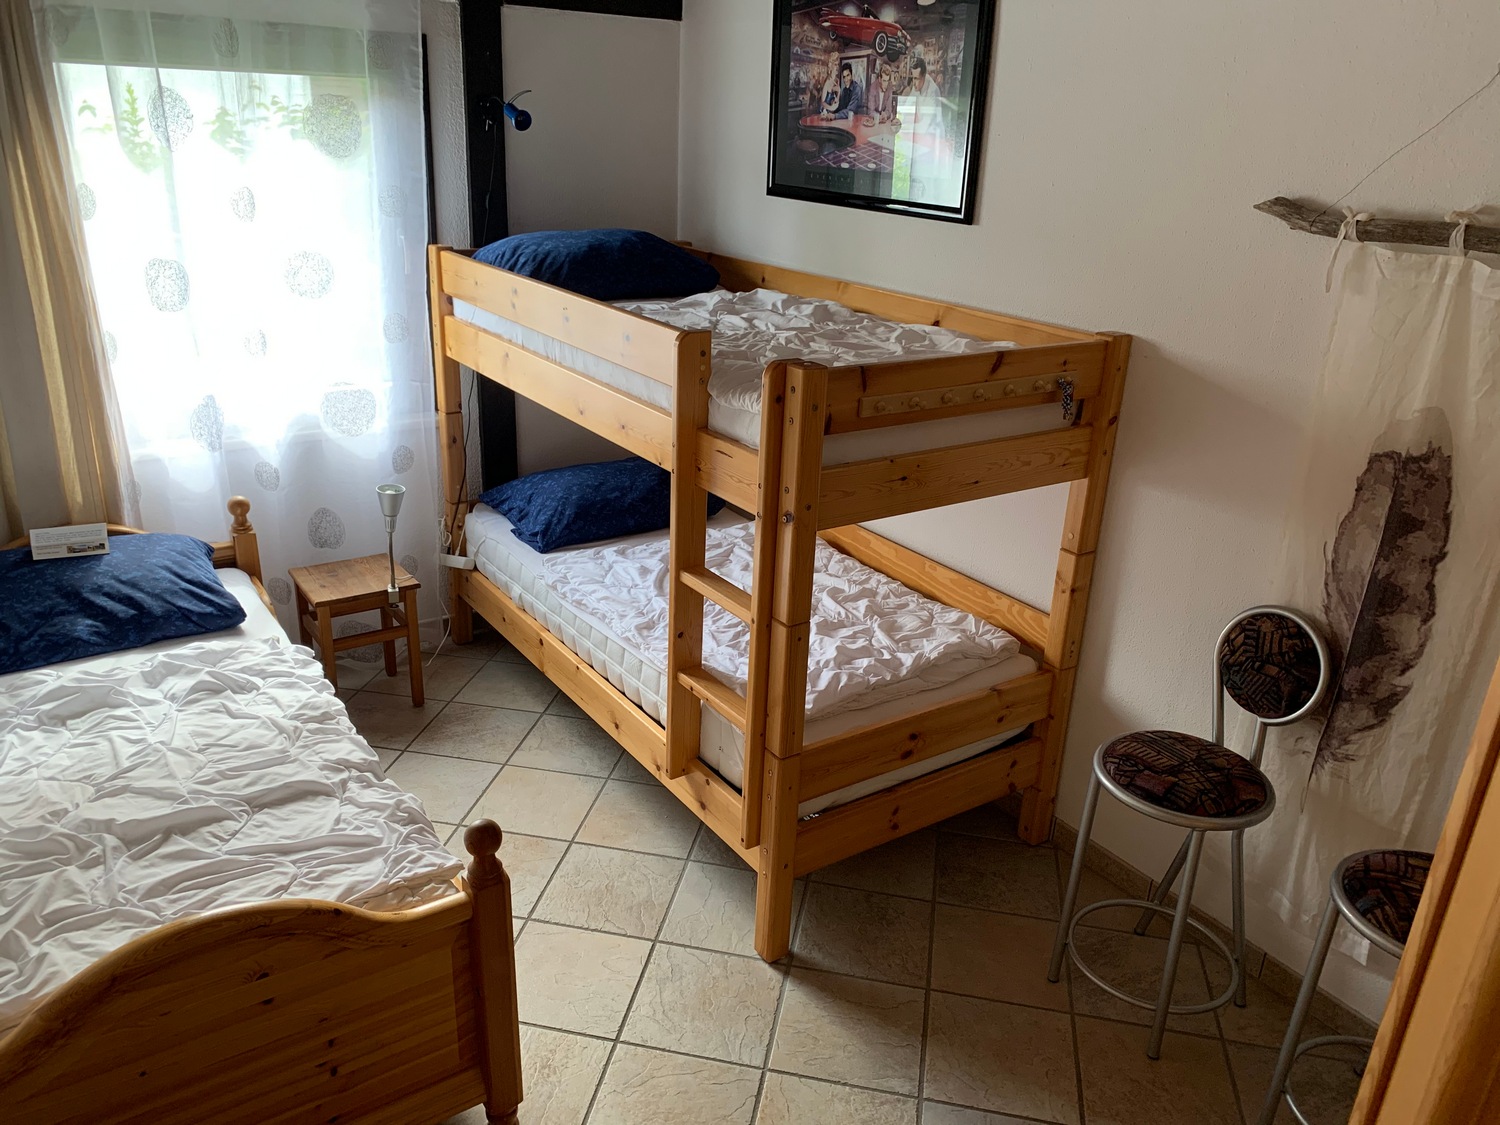 Kinderzimmer:3 Bettzimmer  mit Etagen Bett